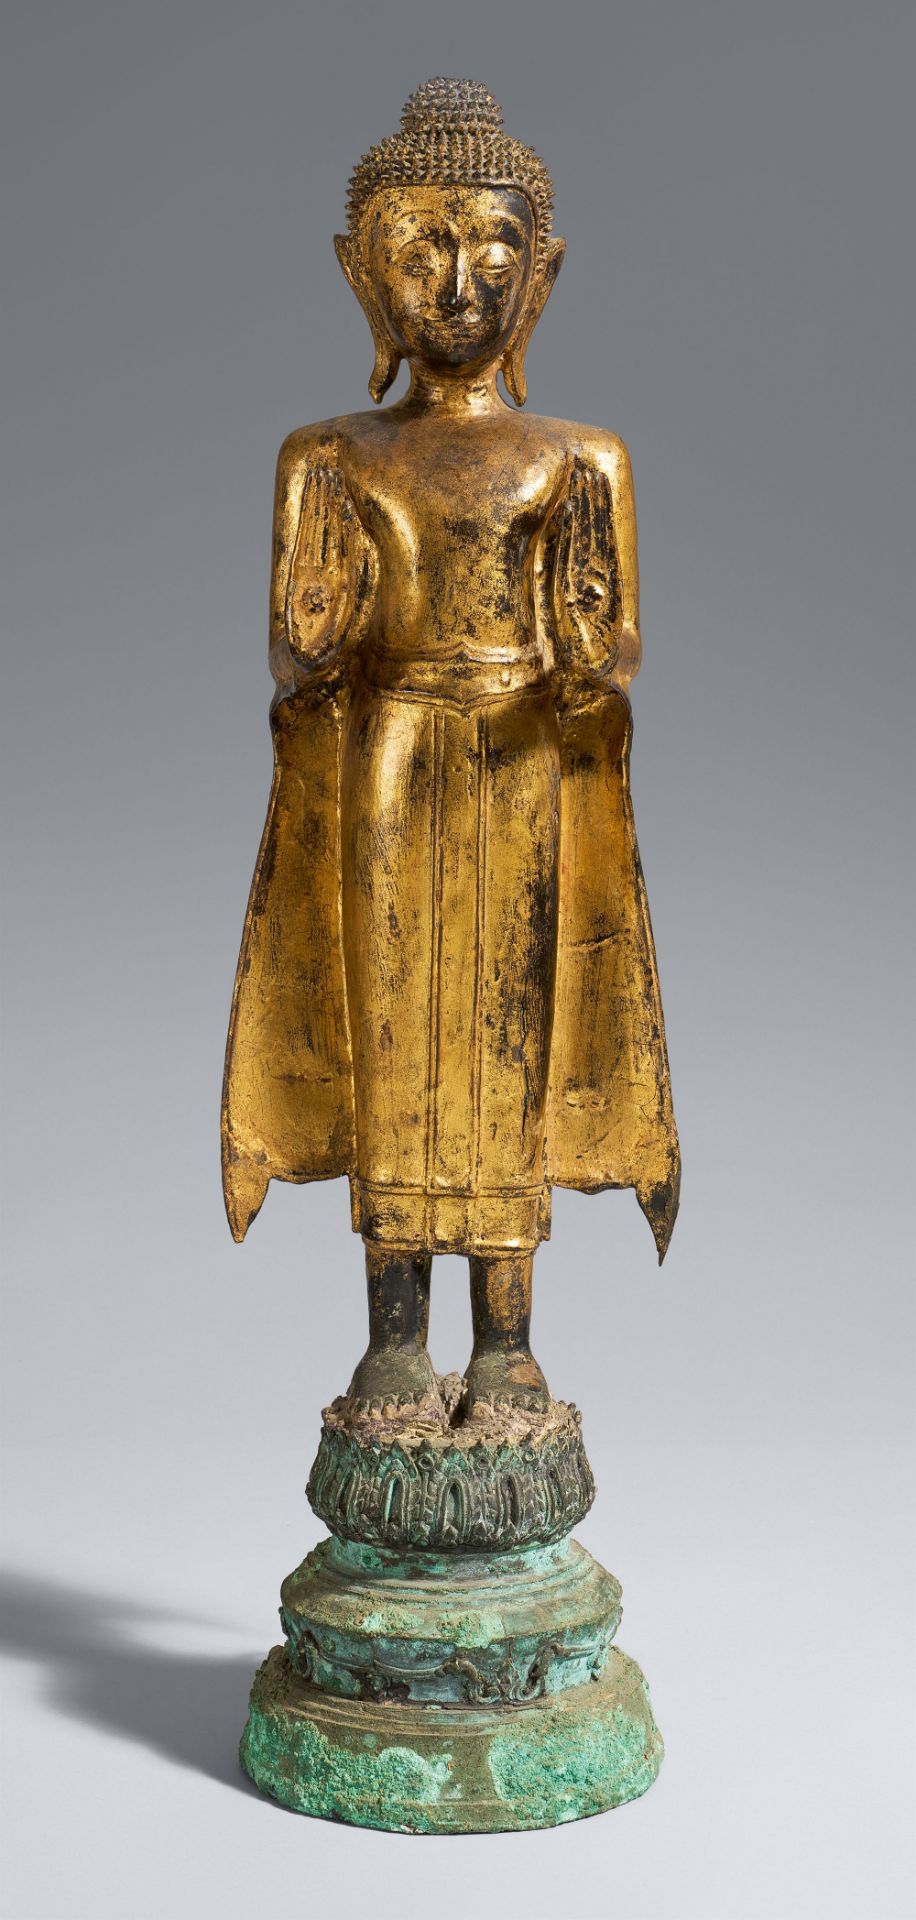 Stehender Buddha. Bronze über Schwarzlack, vergoldet. Thailand. Im Ayutthaya-Stil, 18./19. Jh.